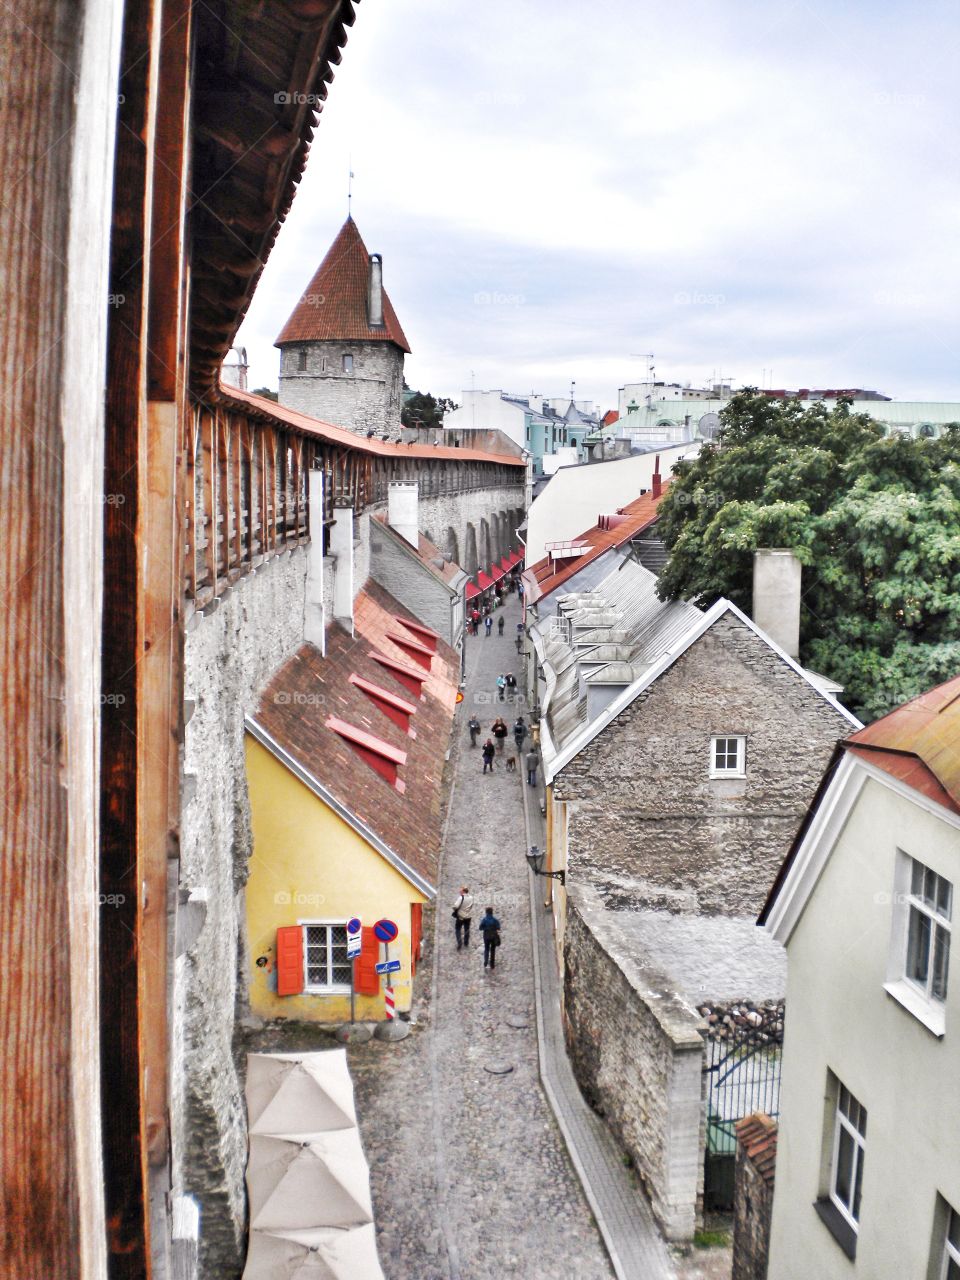 Exploring Tallinn